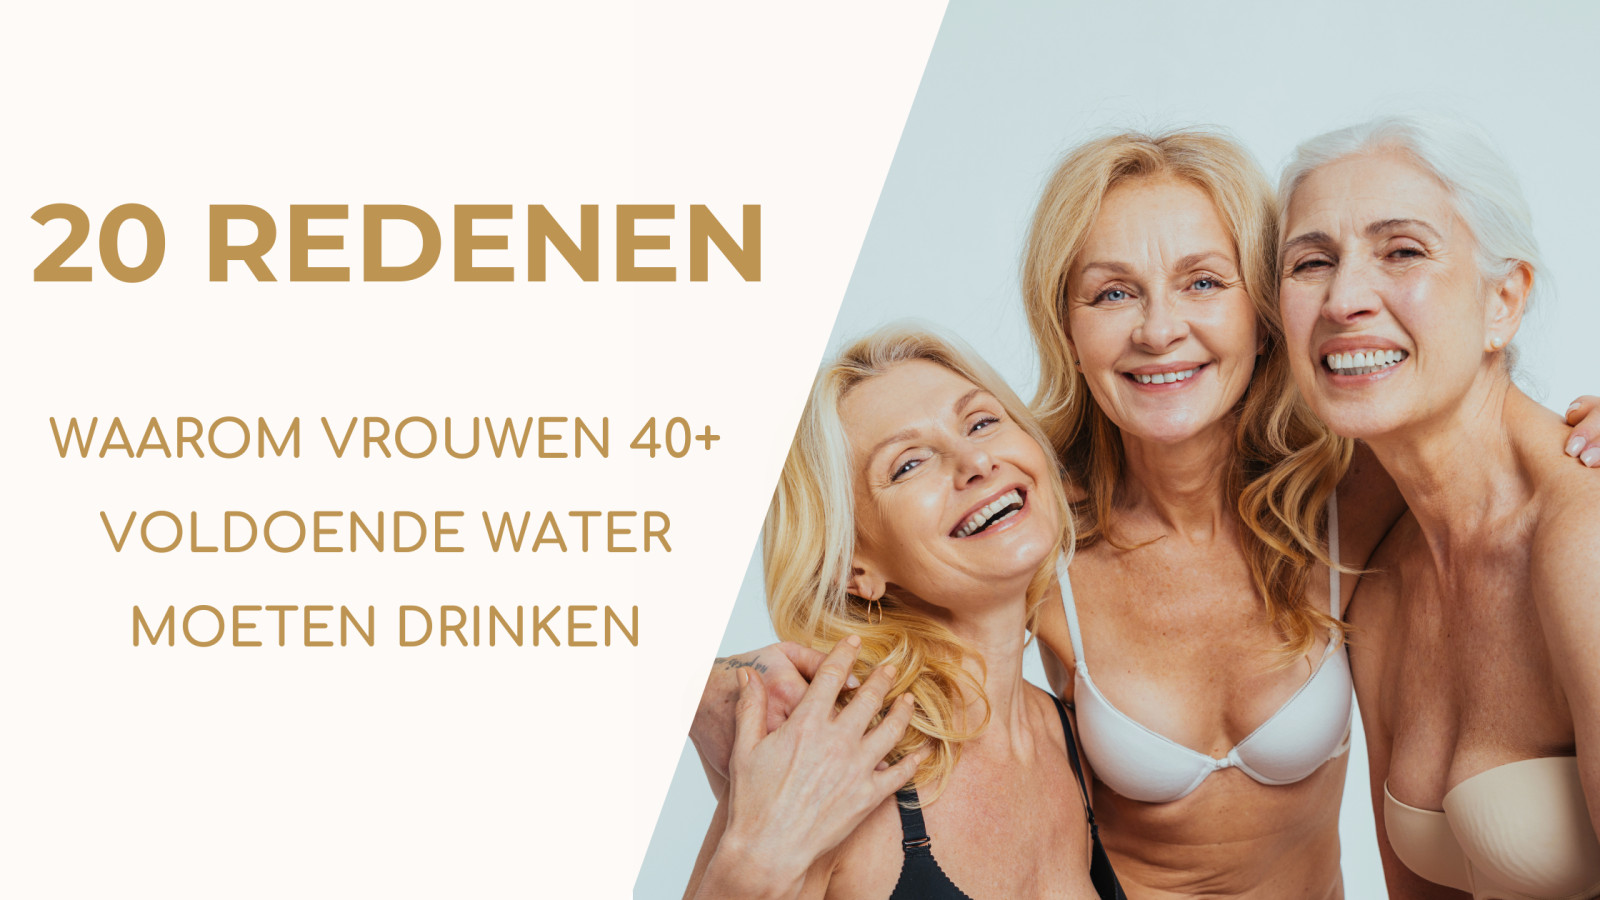 20 redenen waarom vrouwen 40+ voldoende water moeten drinken